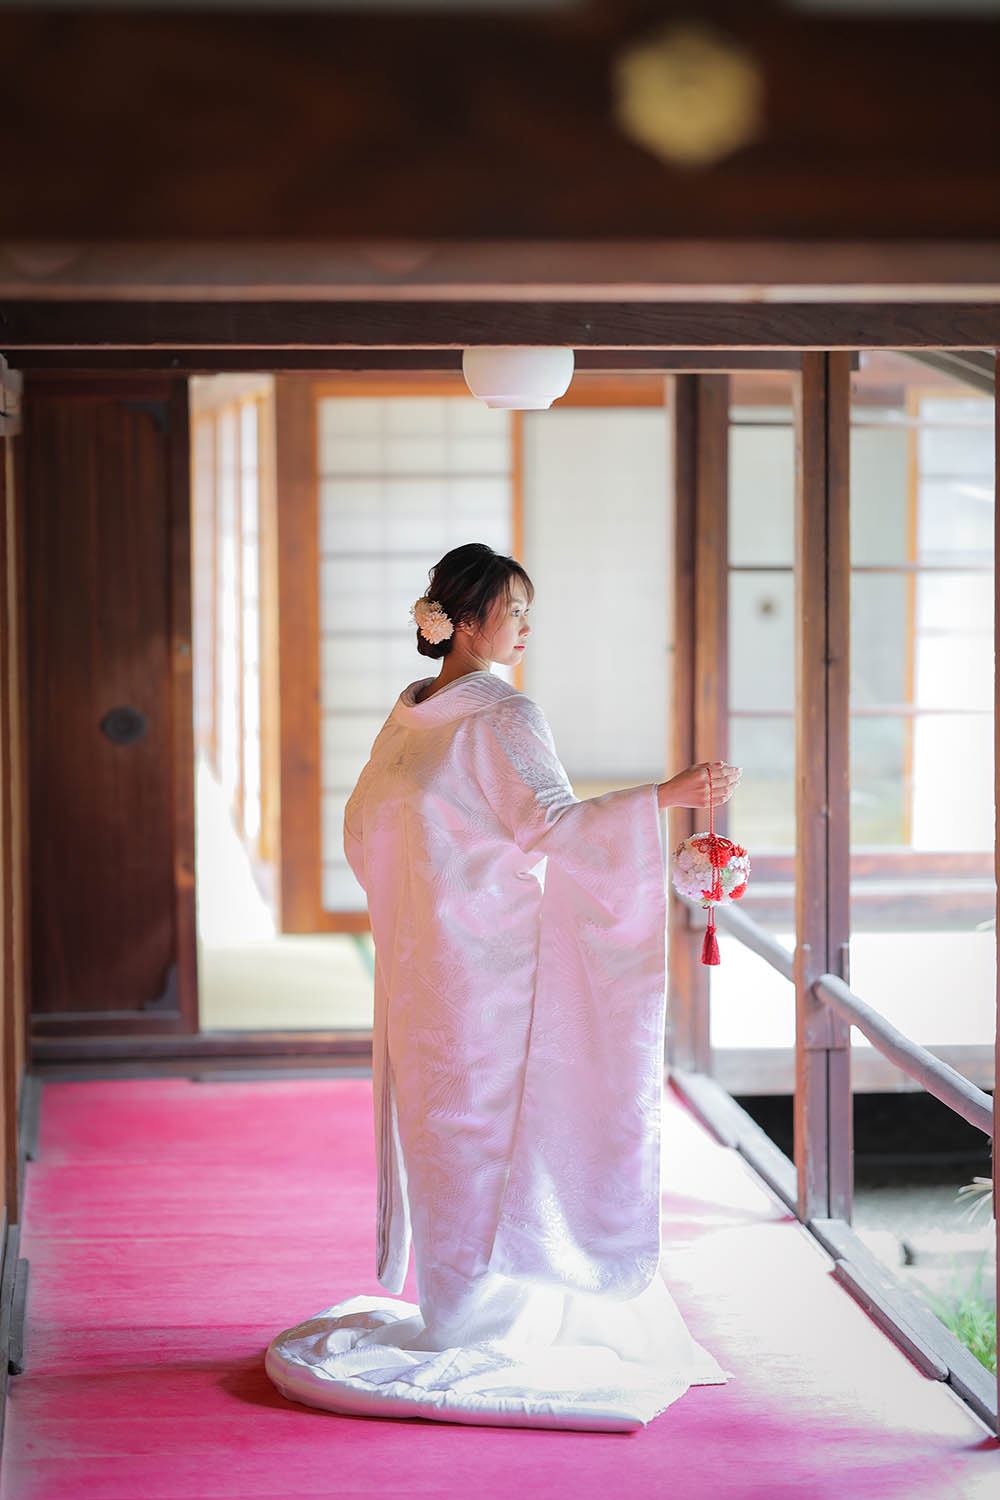 白無垢姿の花嫁様の京都の寺院での一枚